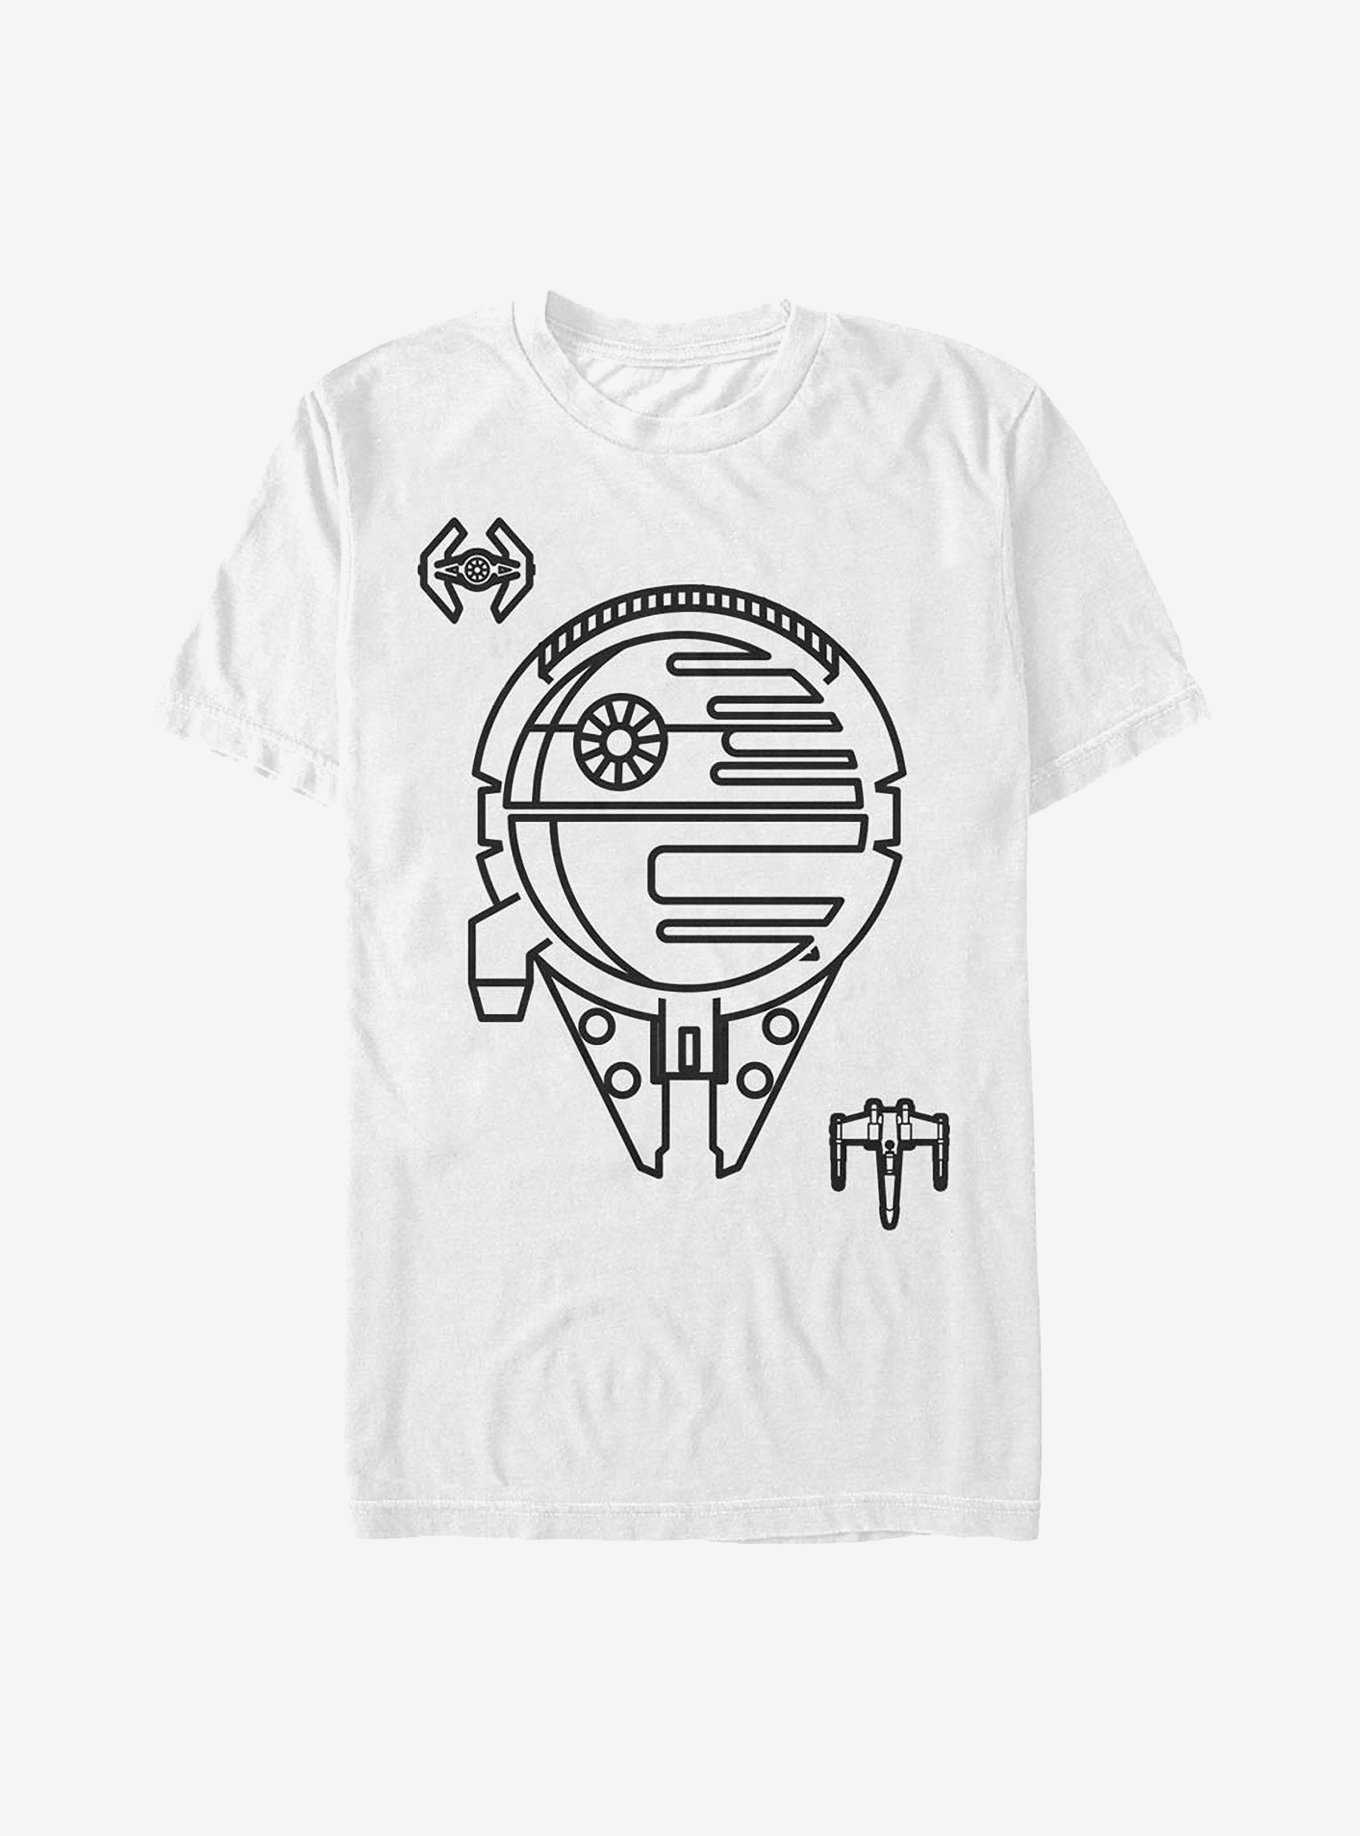 Star Wars Minimal Ships T-Shirt, , hi-res